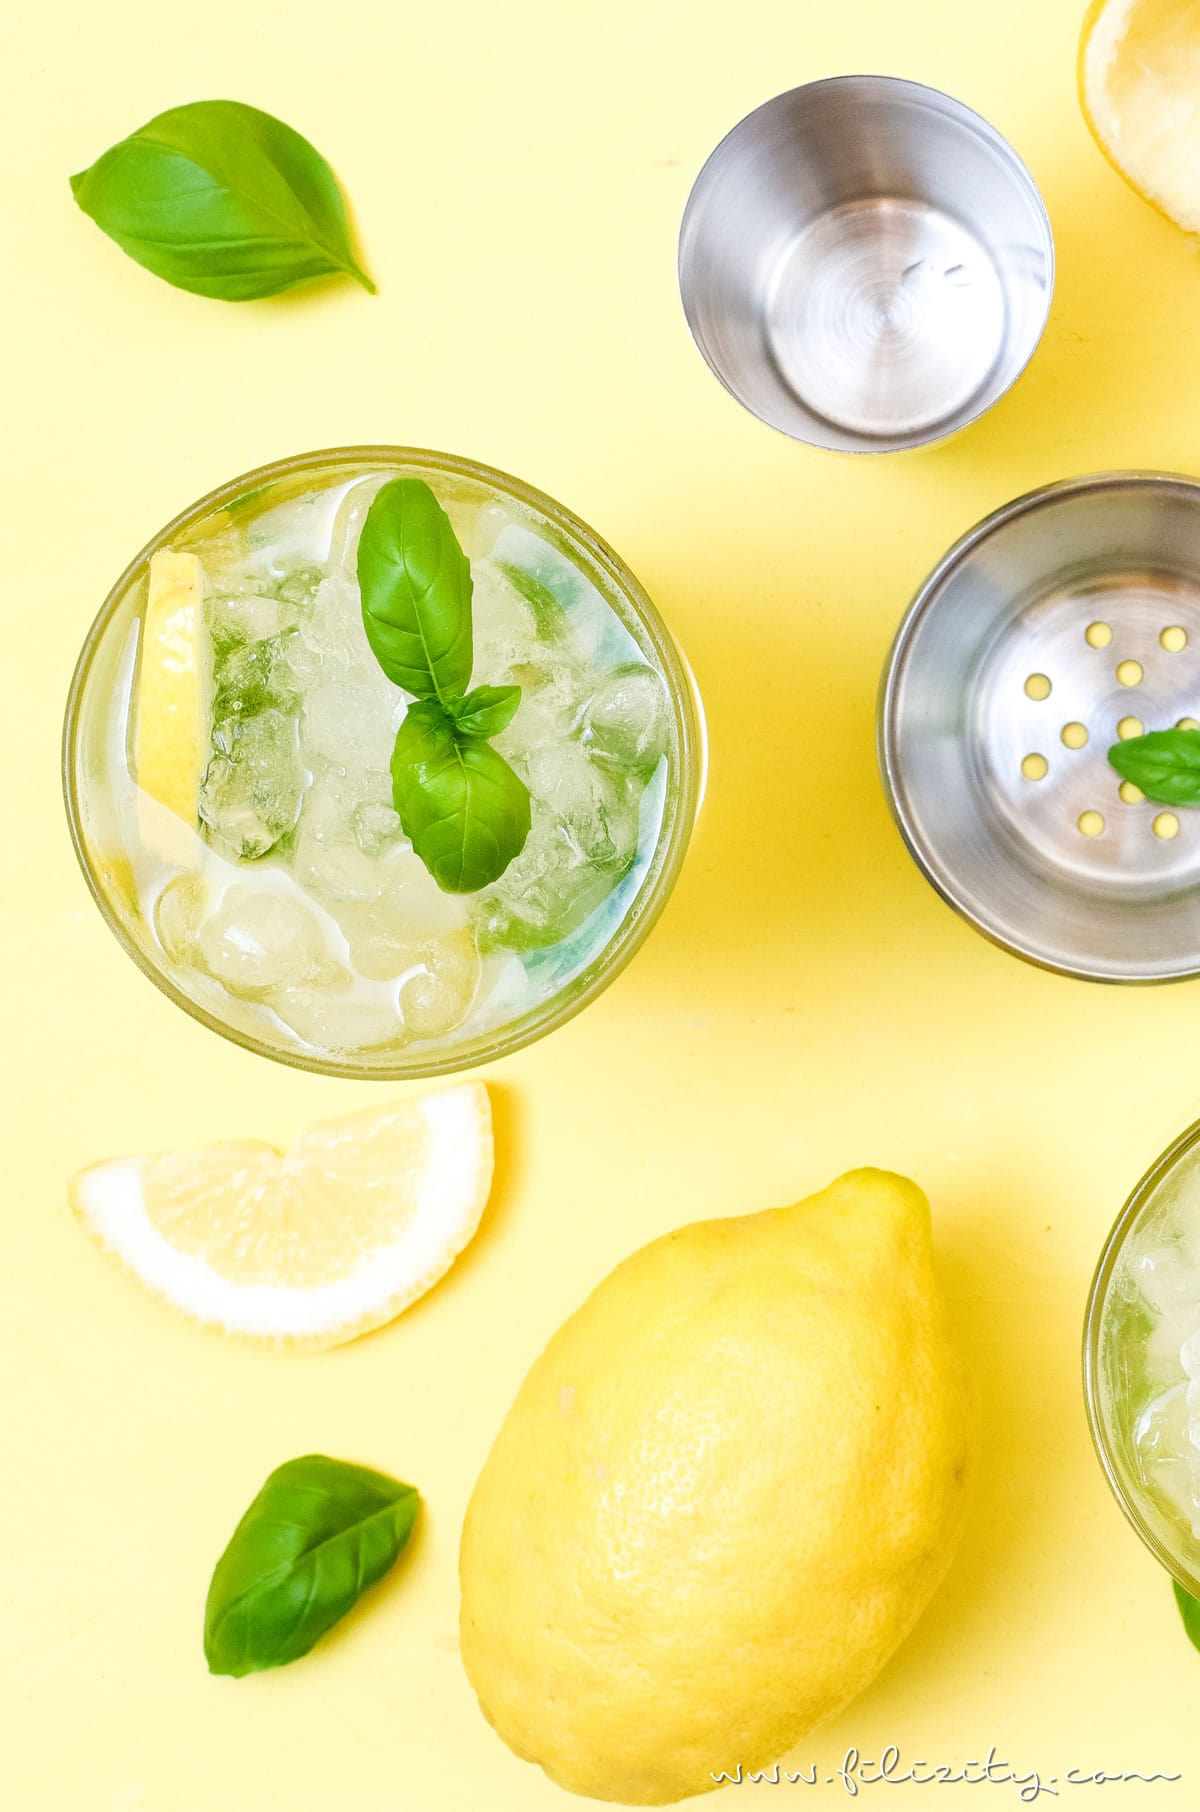 Rezept für Zitronen-Mojito mit Basilikum | Der kubanische Cocktail-Klassiker | Filizity.com | Food-Blog aus dem Rheinland #cocktail #sommer #drink